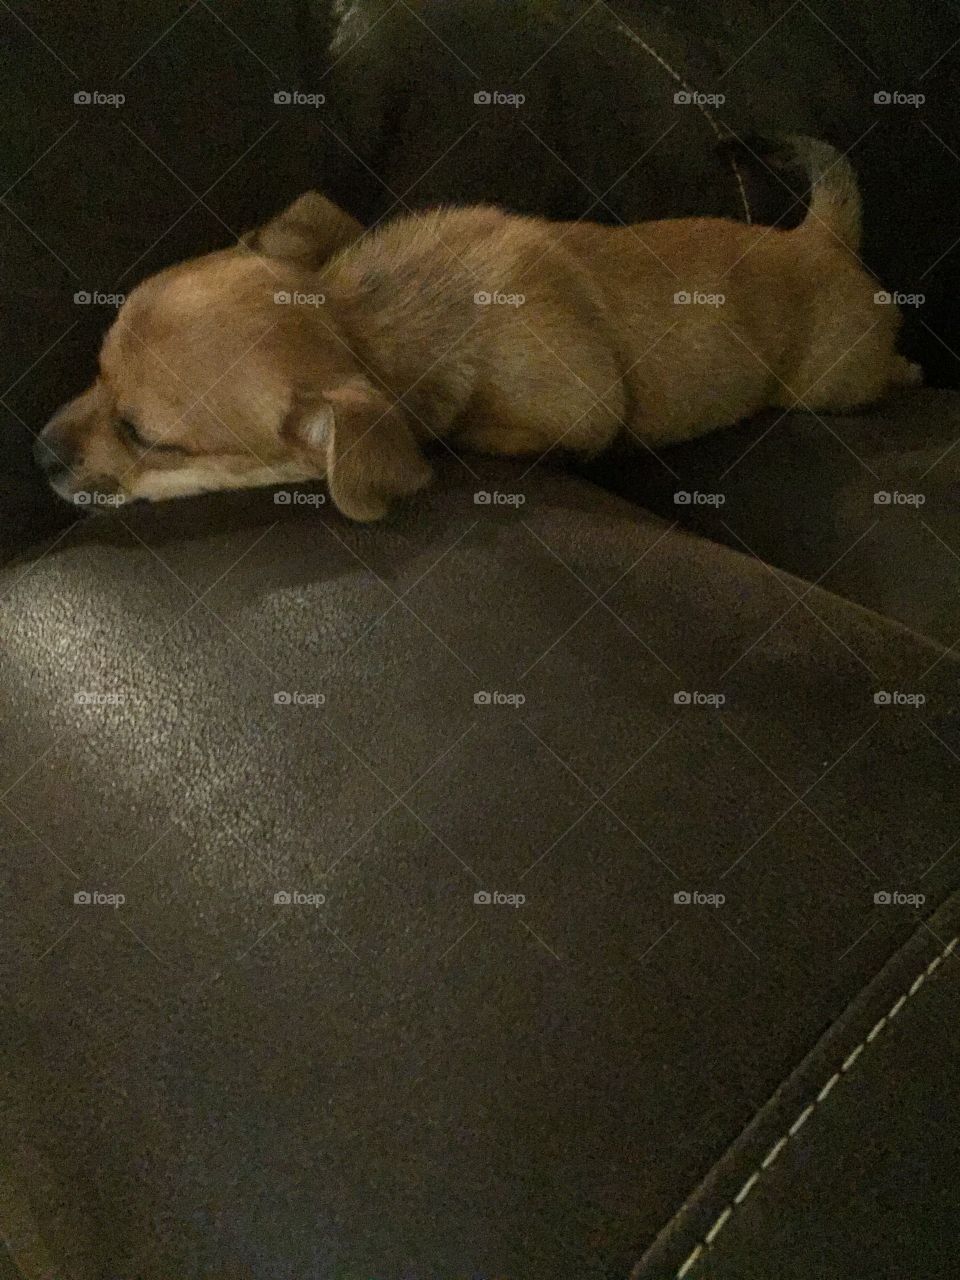 Sleepy doggo